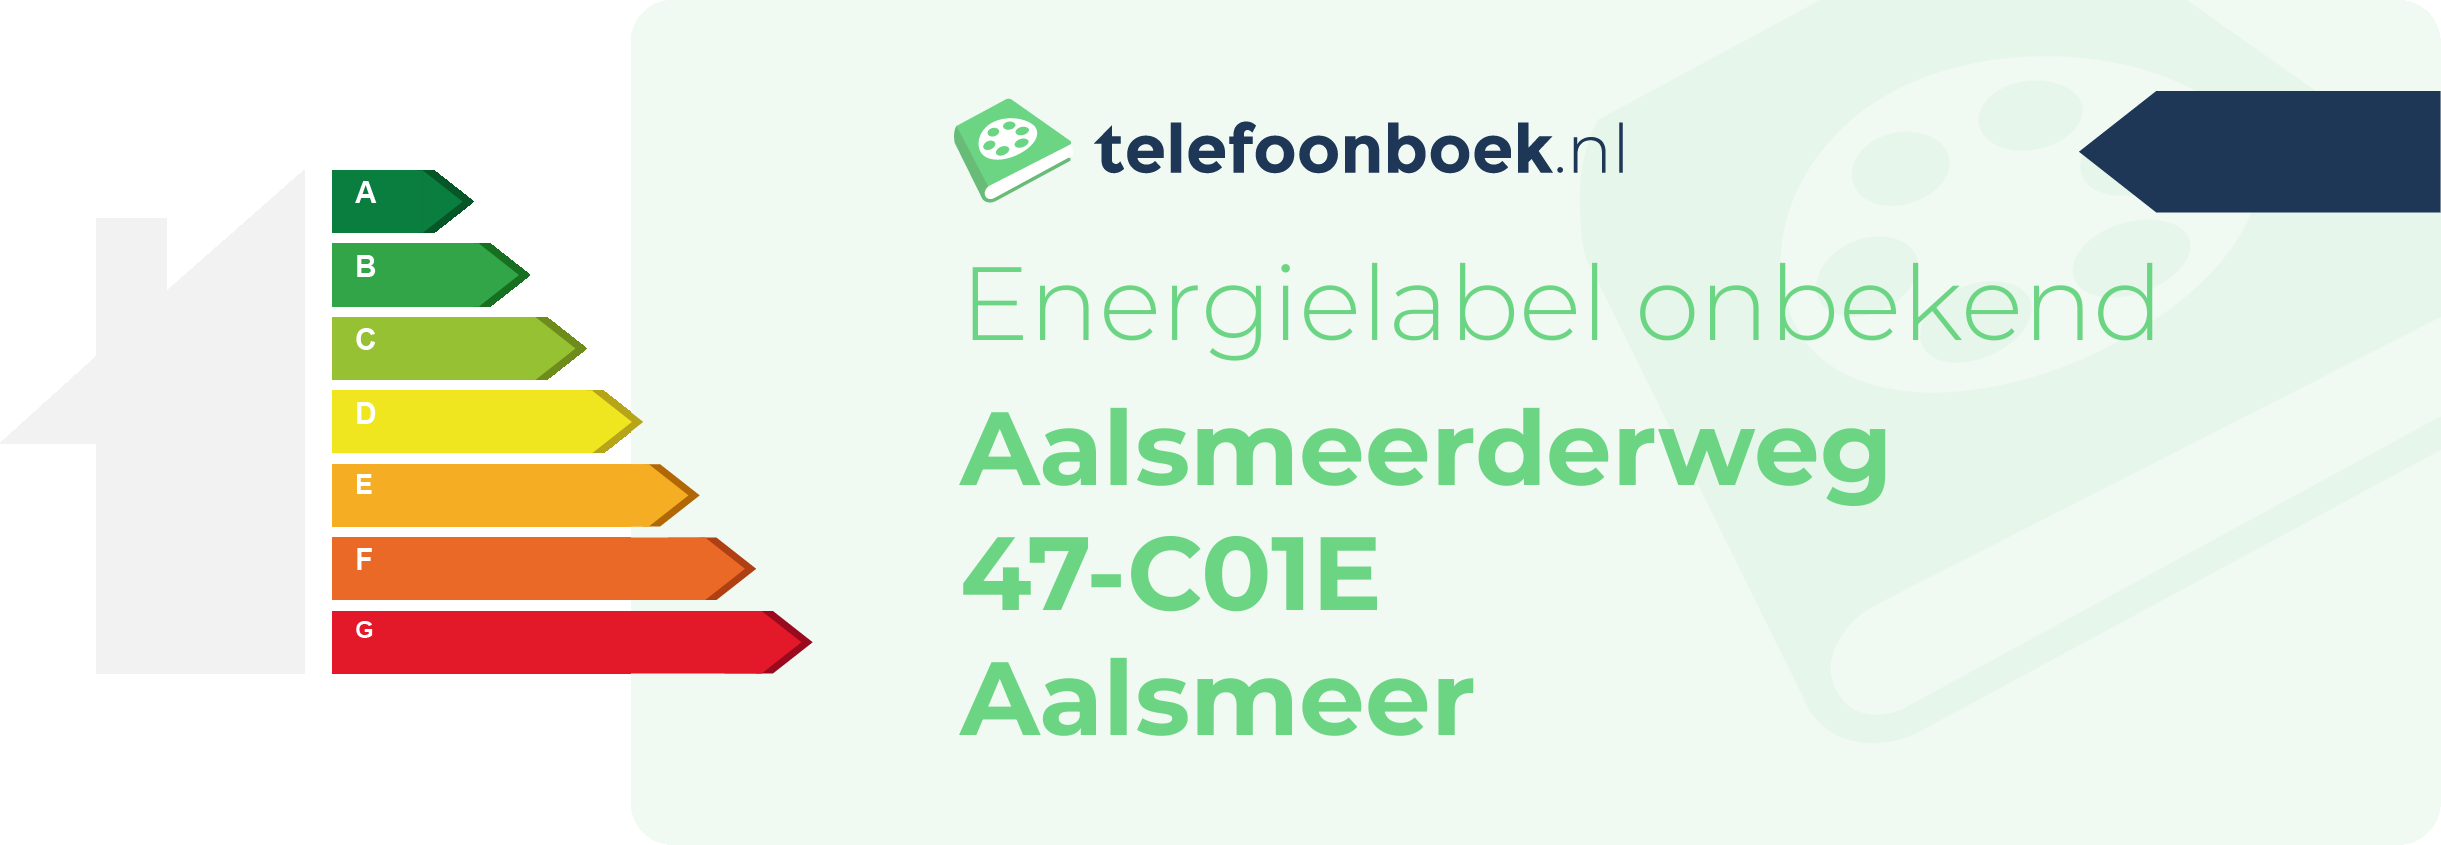 Energielabel Aalsmeerderweg 47-C01E Aalsmeer